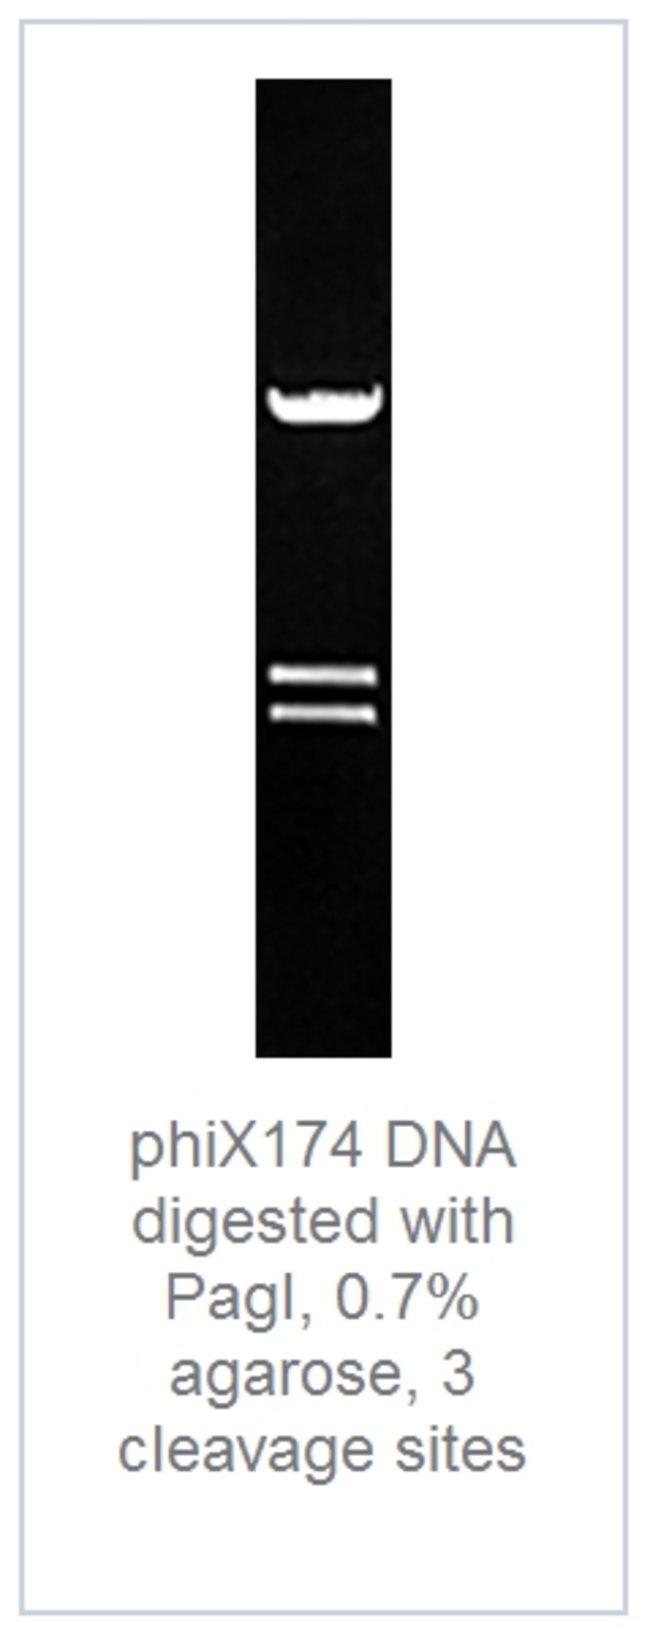 DNA digest